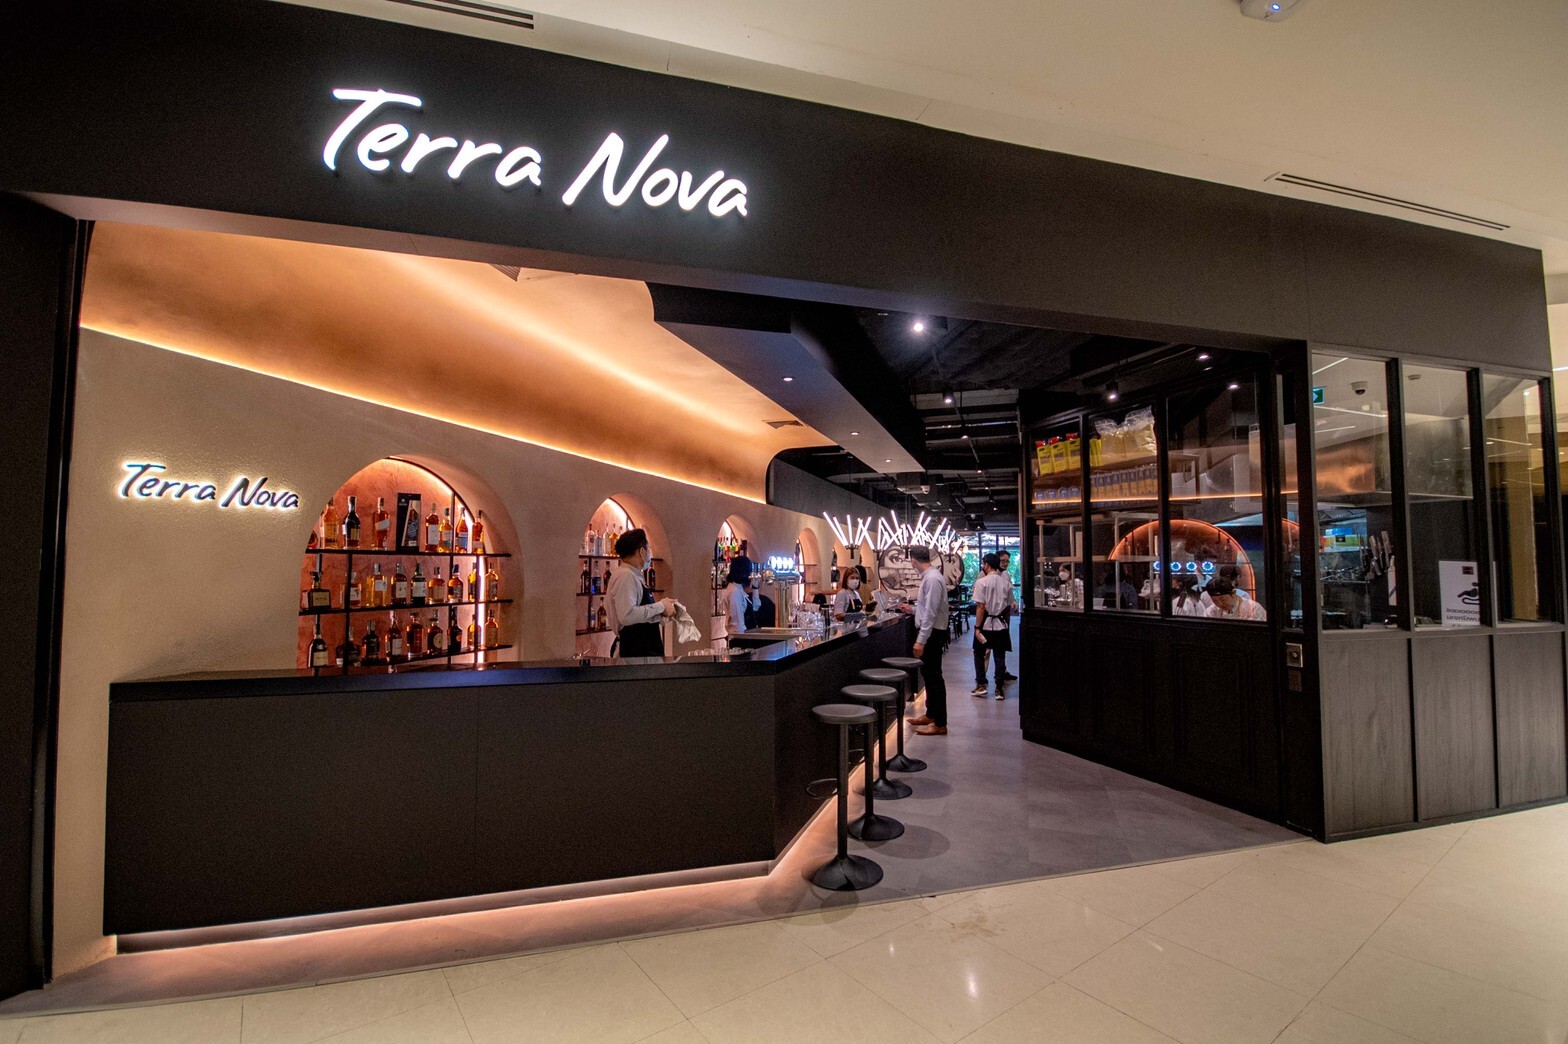 เปิดใหม่ "Terra Nova" ร้านอาหารอิตาลี เทรนดี้กระแสแรง ชูเมนูต้นตำรับผสานโมเดิร์นอิตาเลียนสไตล์ที่เดอะคริสตัล เลียบทางด่วน